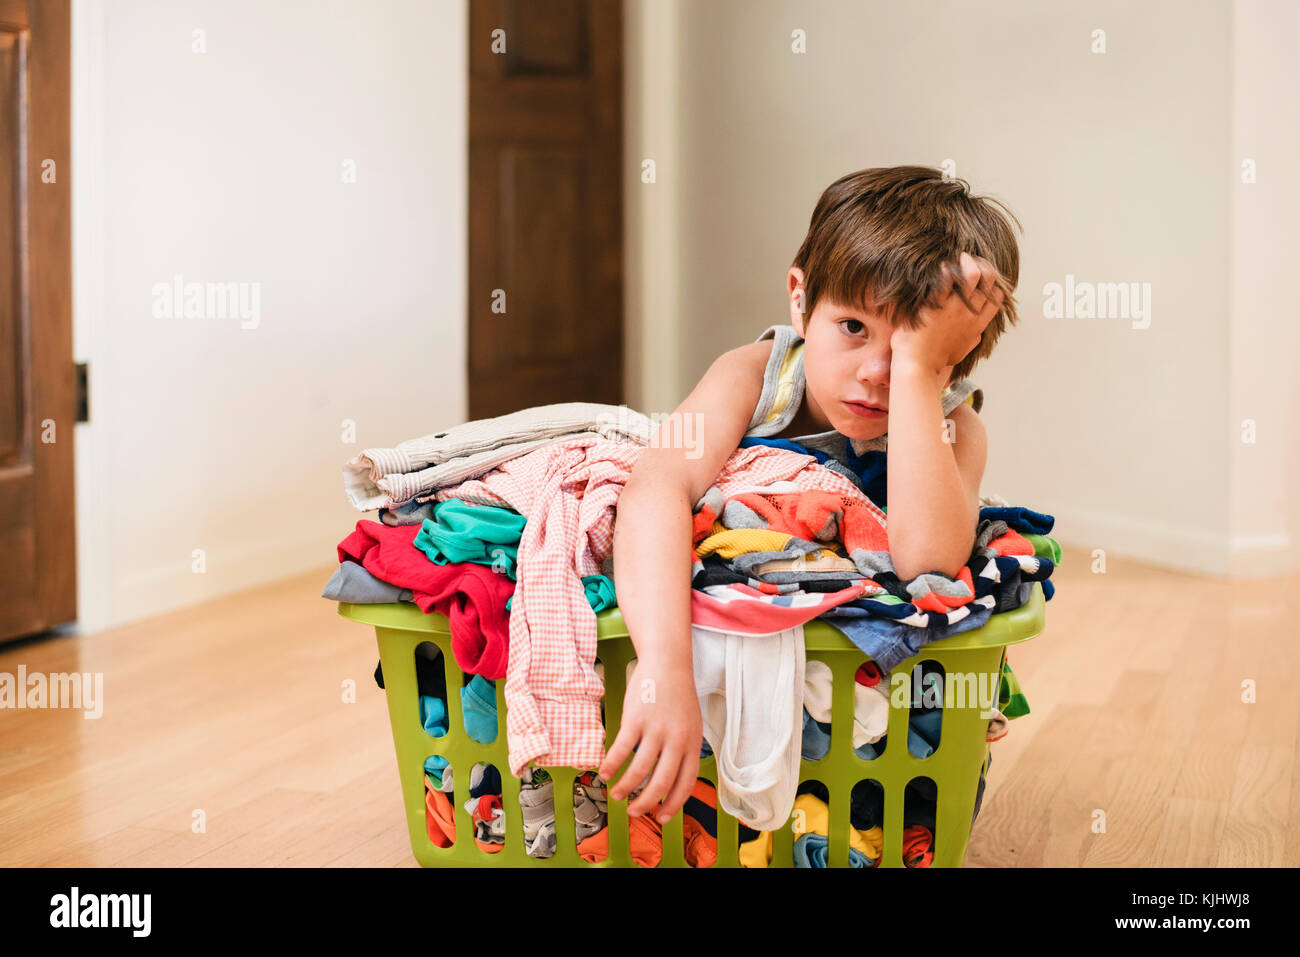 Ragazzo seduto sul pavimento appoggiandosi a un servizio lavanderia basked riempito con vestiti Foto Stock